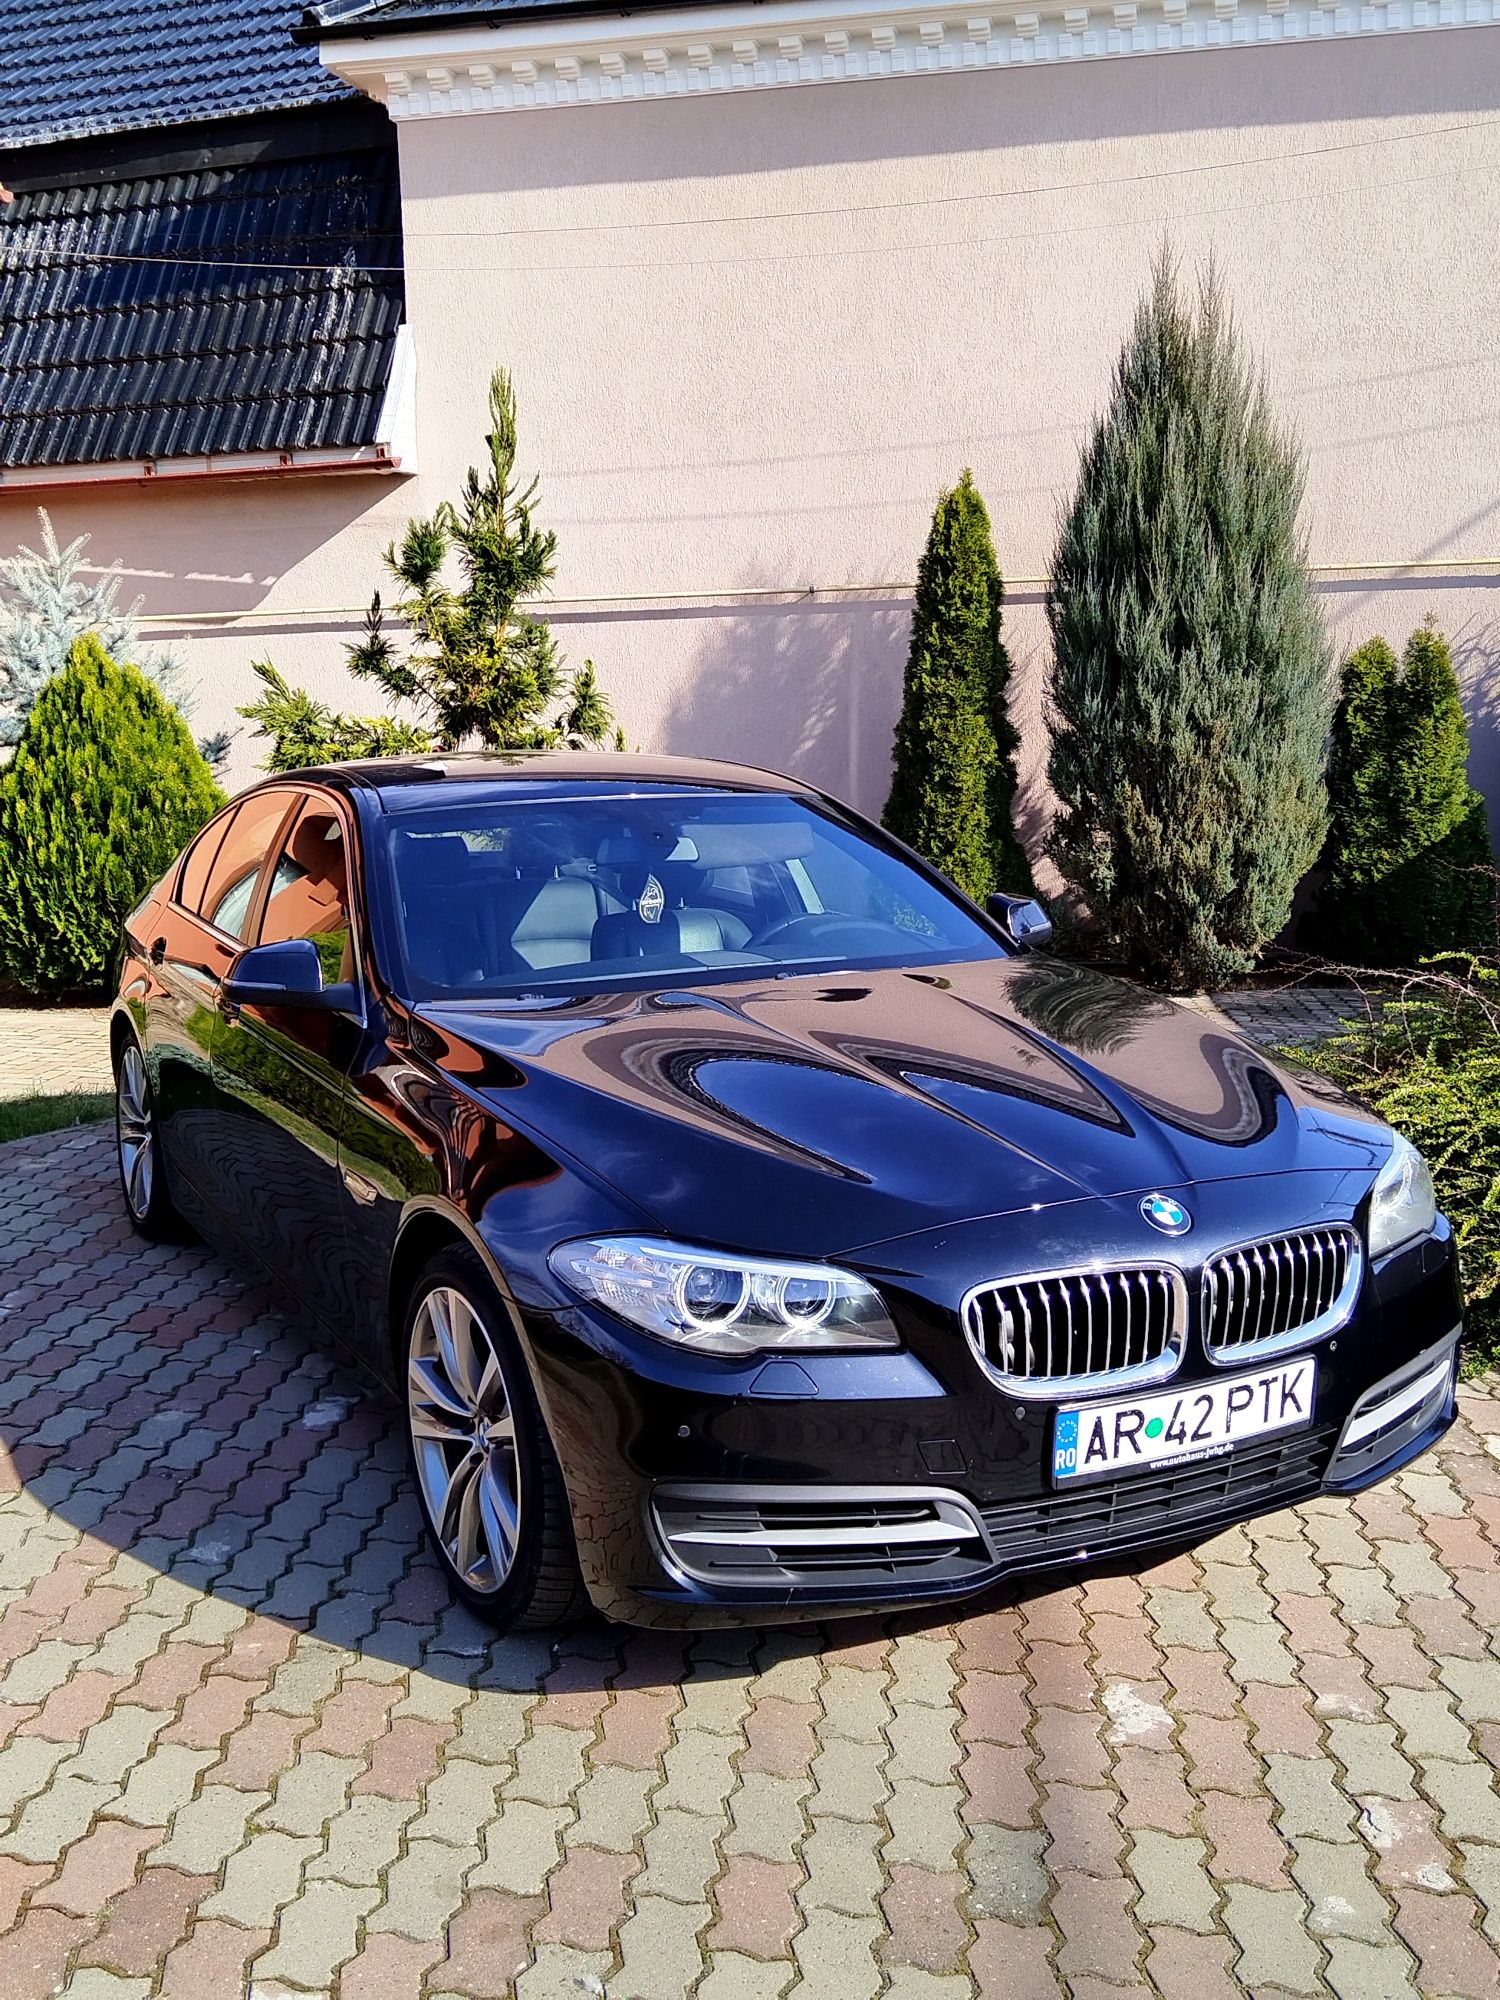 VAND BMW Seria 5 F10 SPORT 525d, 218cp Facelift,  164000km